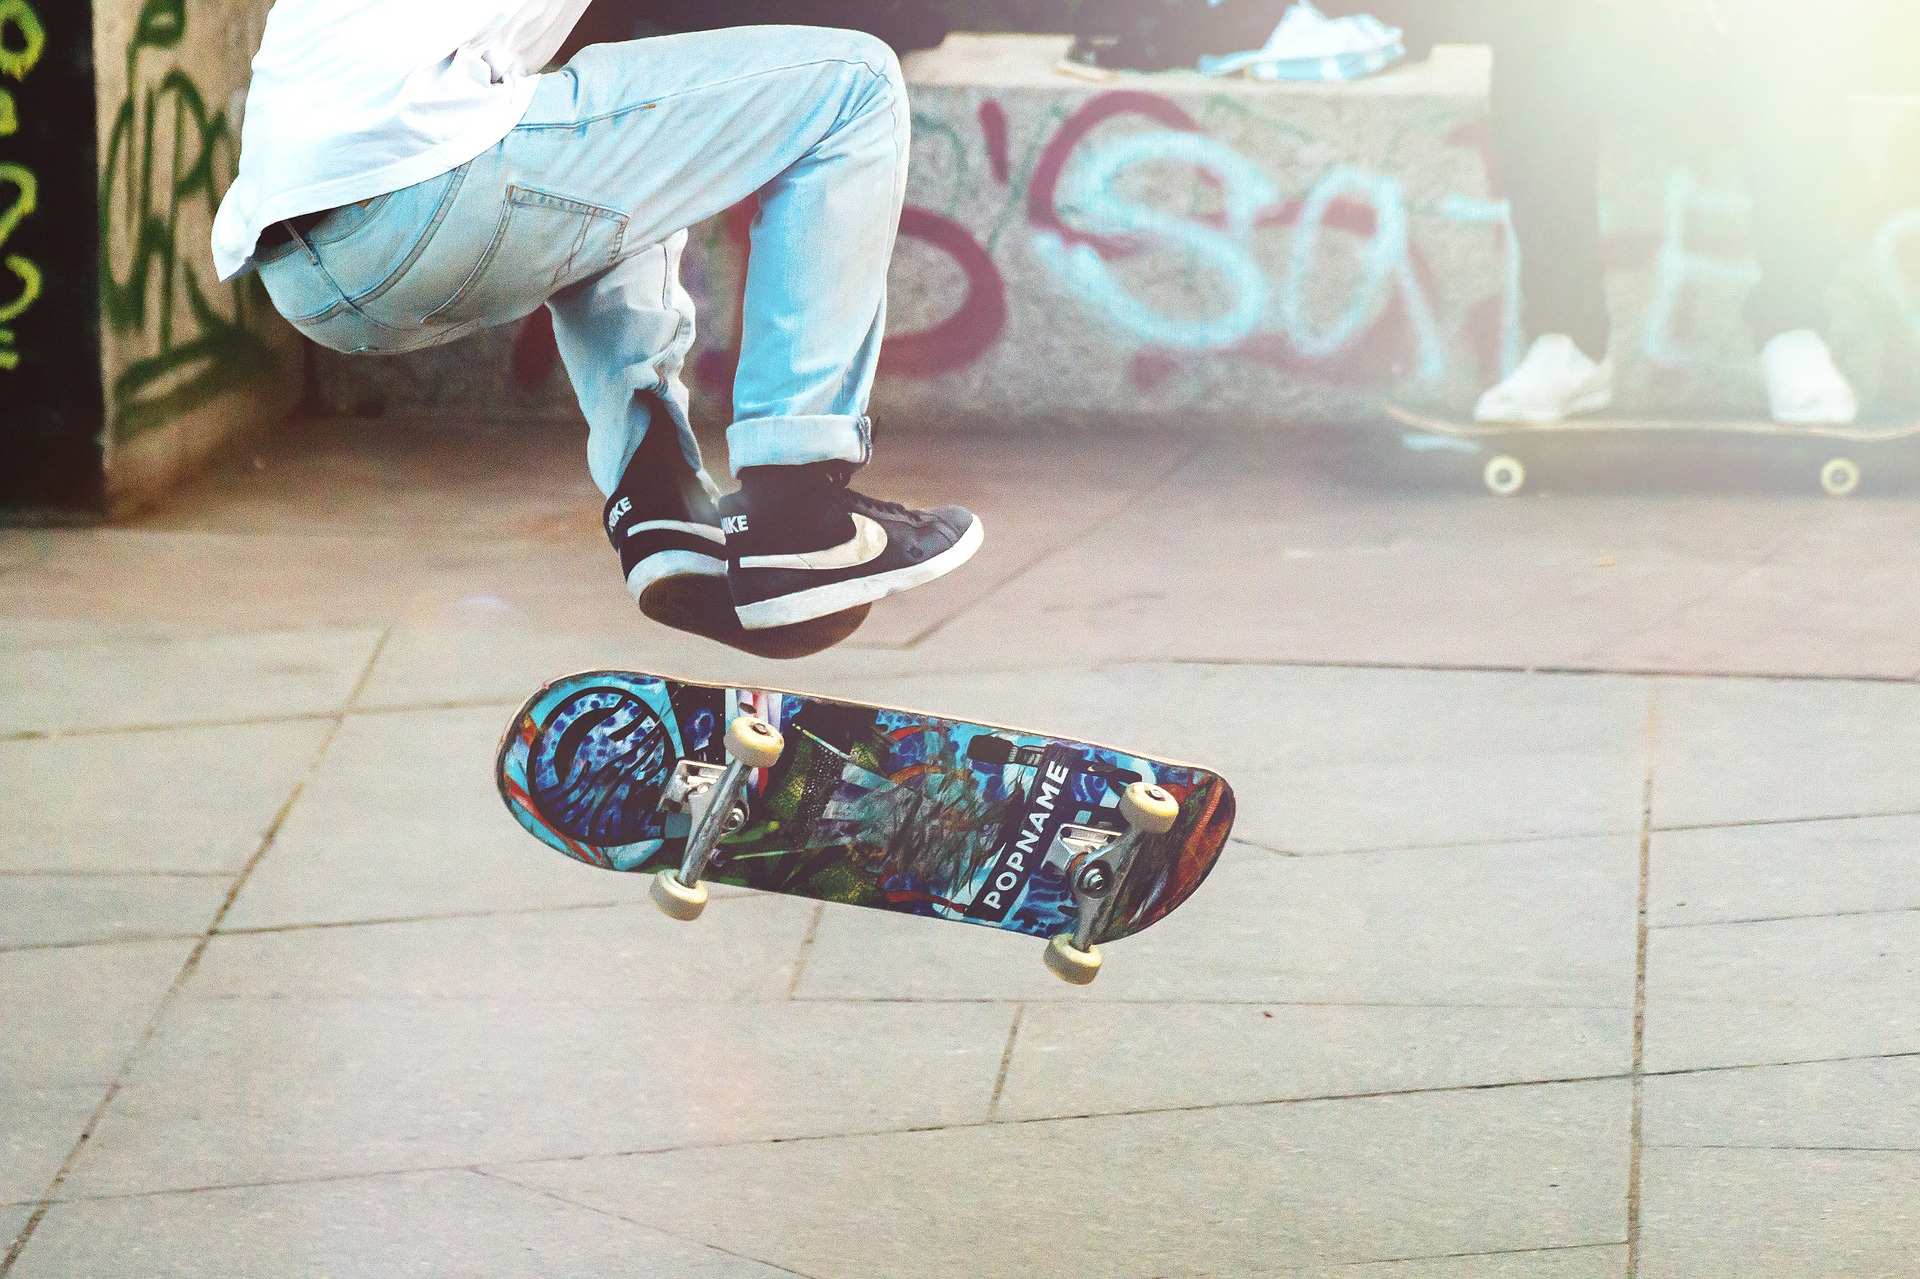 Ein Skateboardfahrer